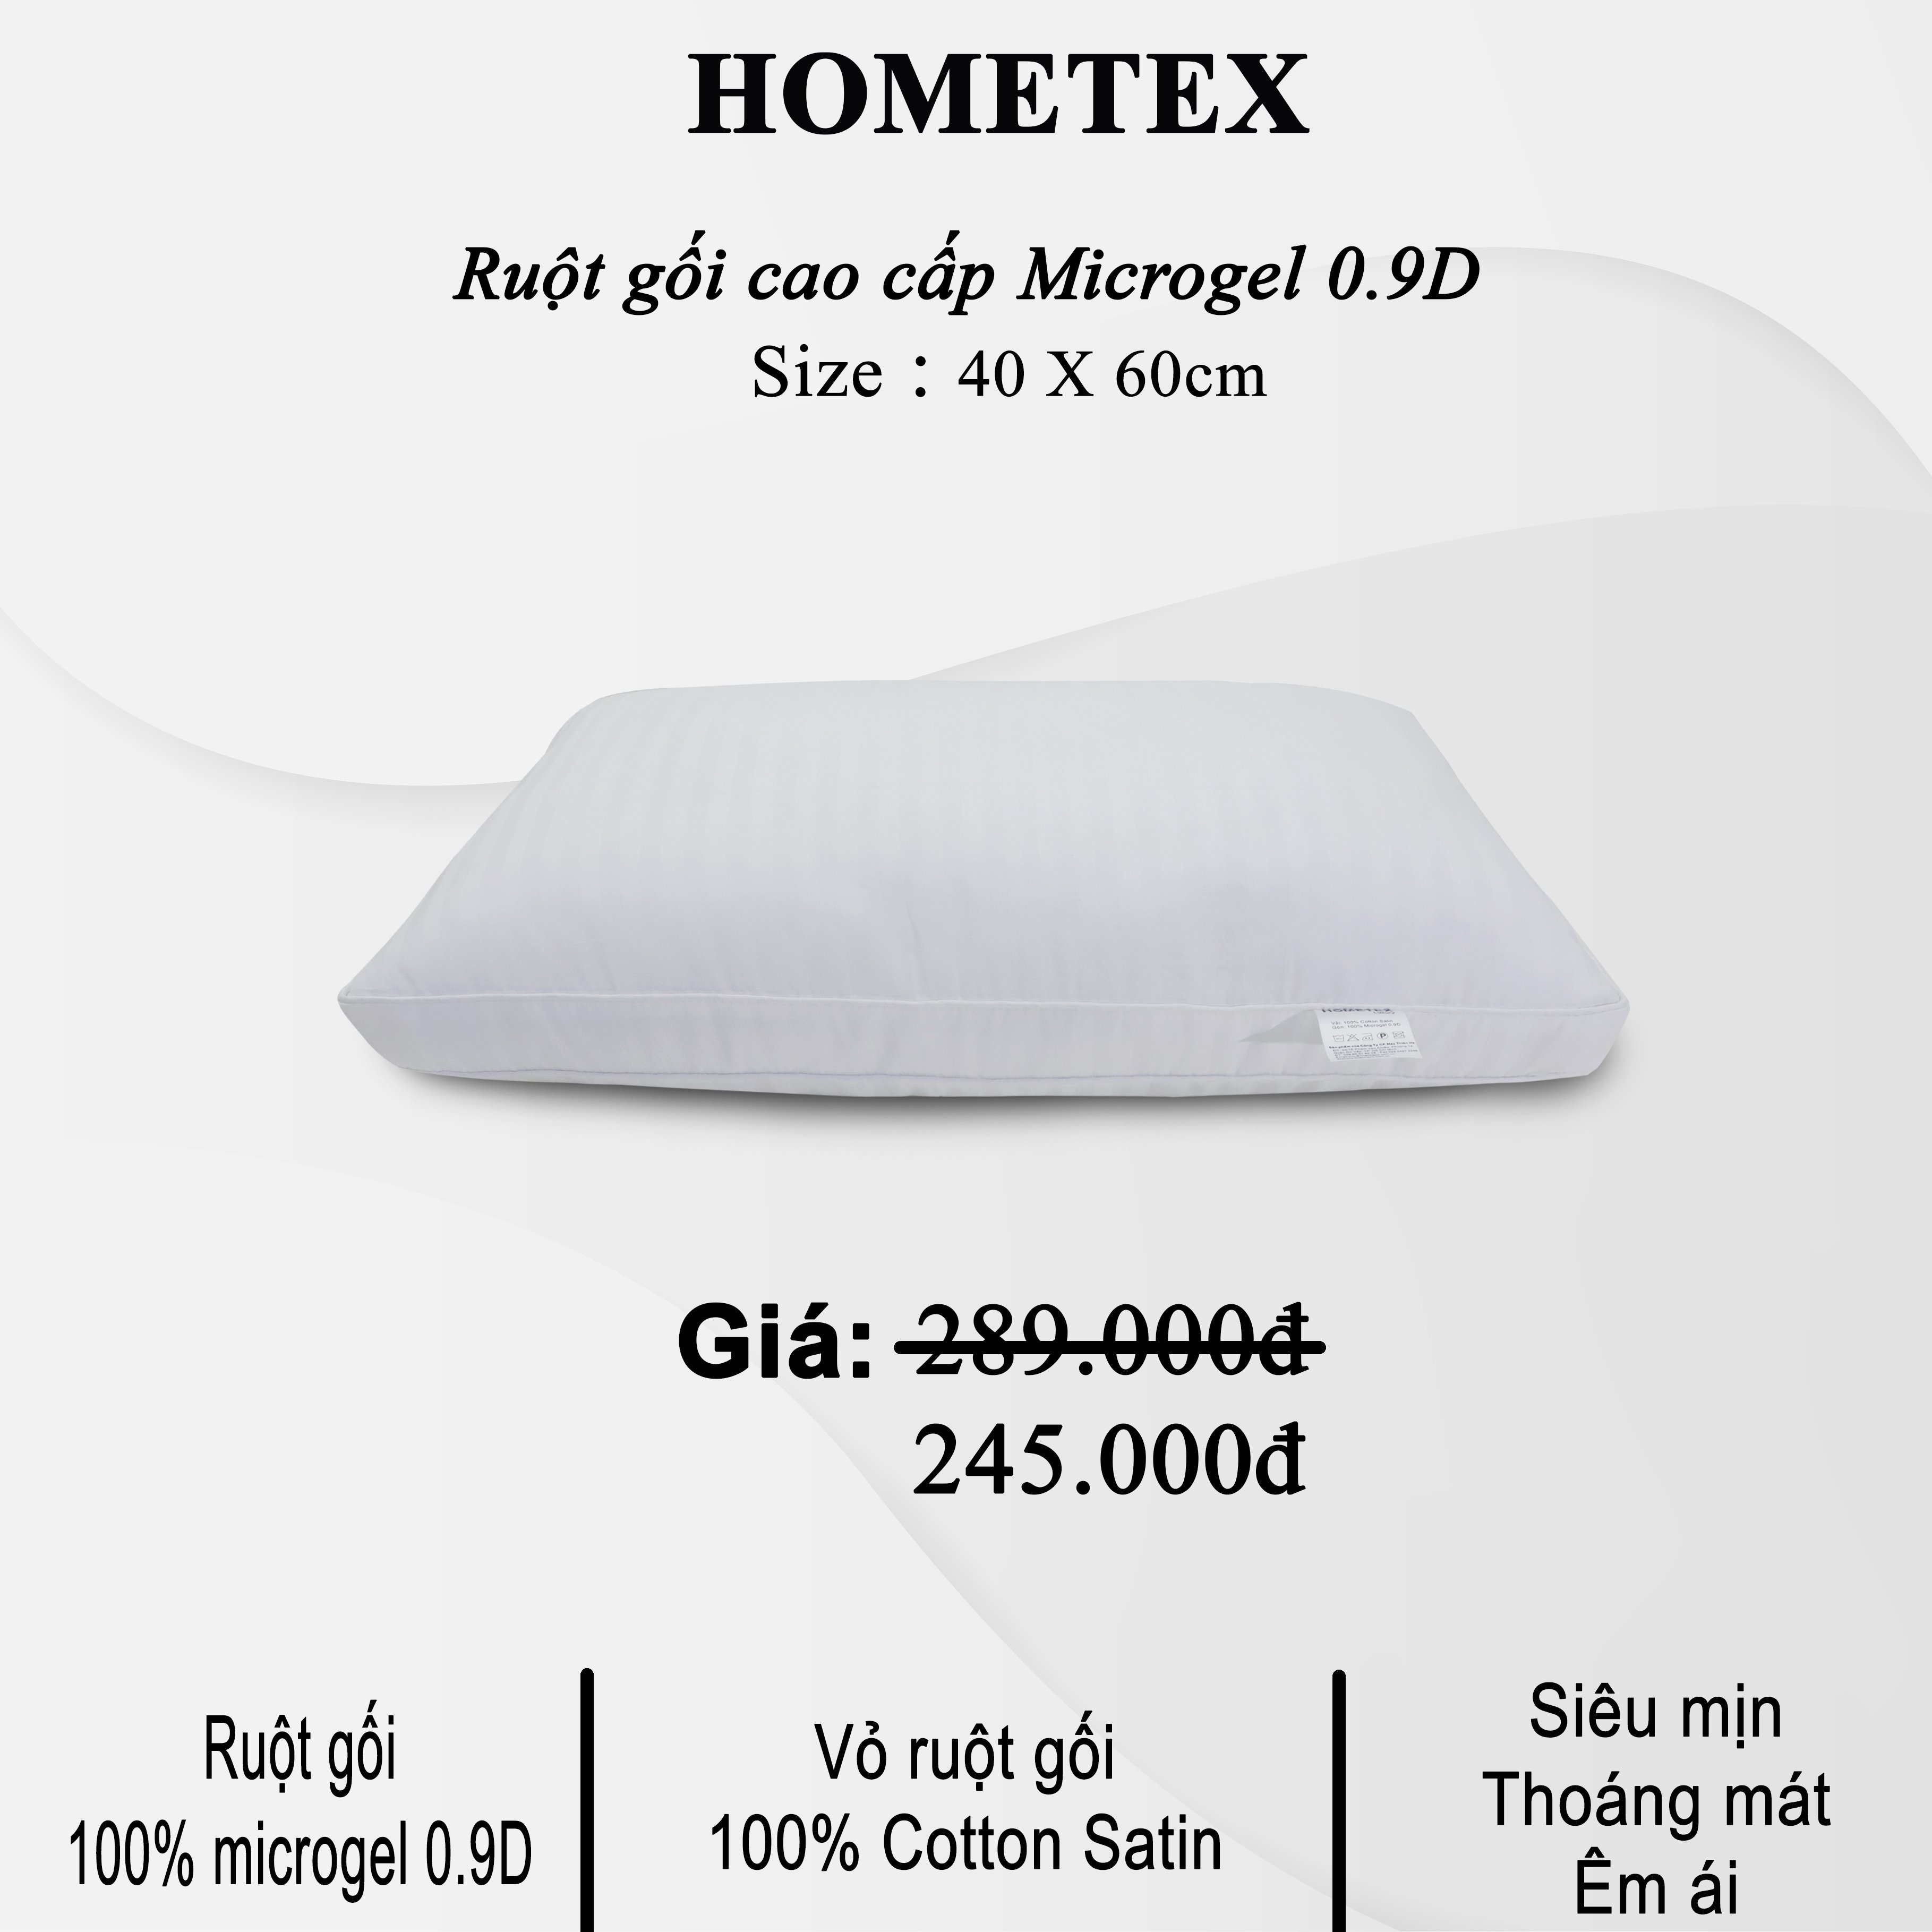 Ruột gối Hometex cao cấp Microgel chính hãng hai viền siêu mềm